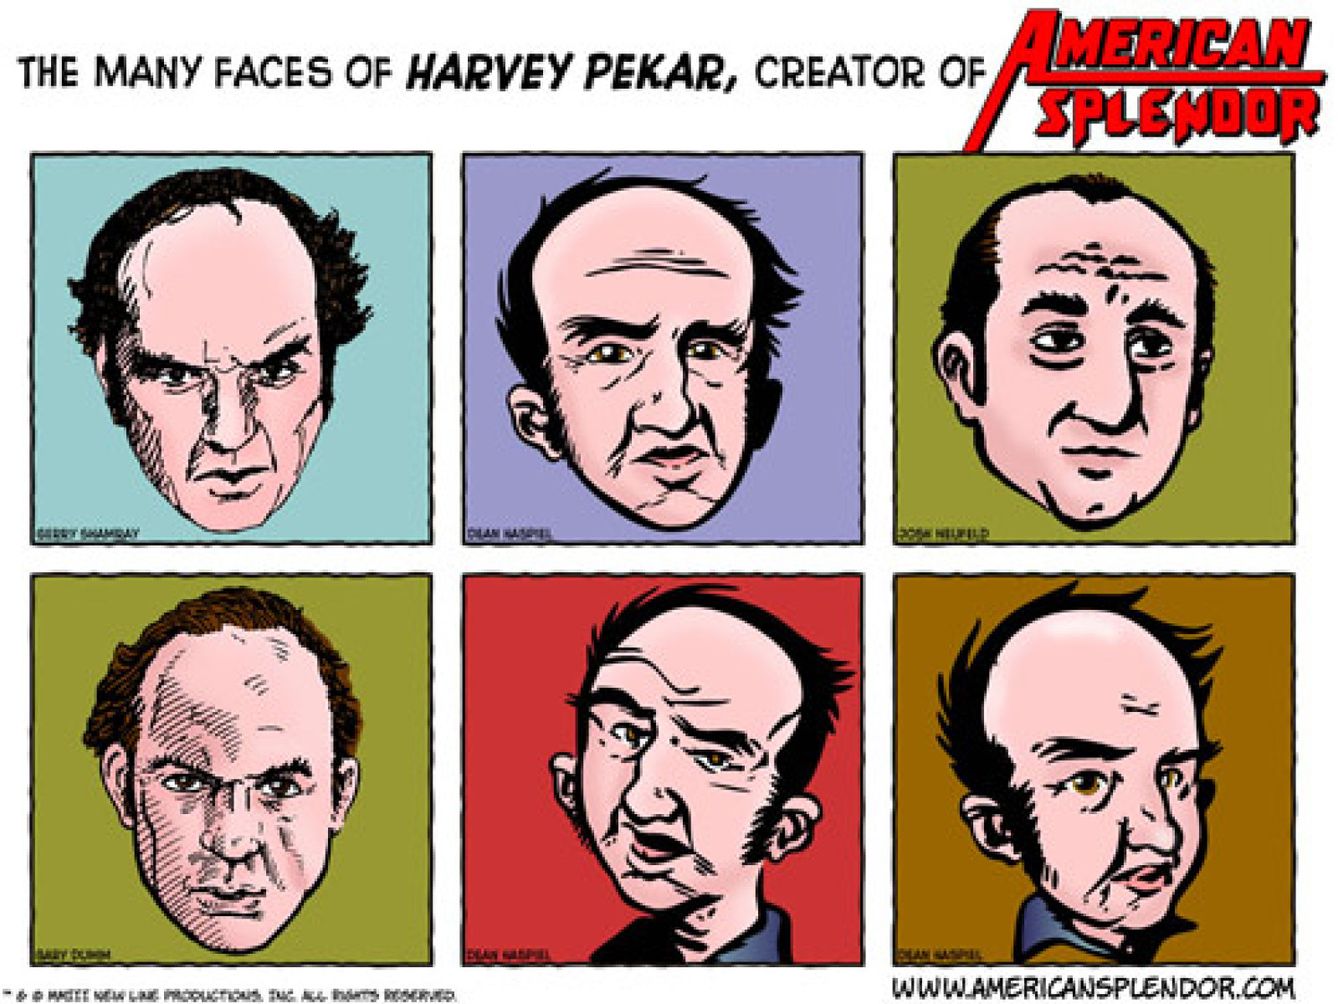 Harvey Pekar, creador de los cómics 'American Splendor', muere a los 70 años